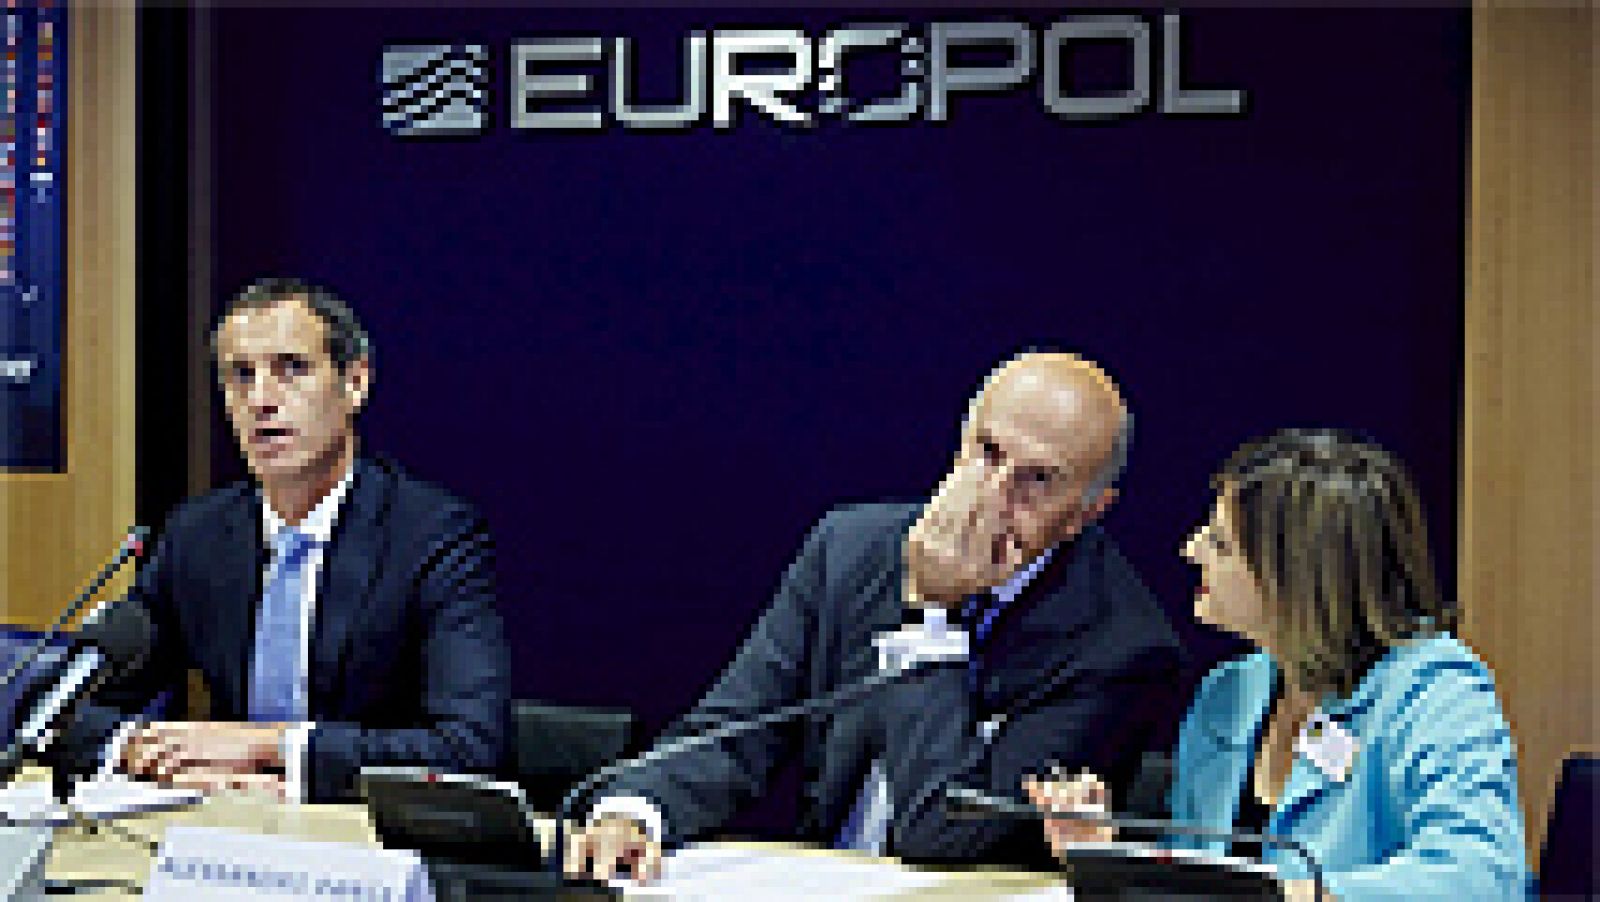  La Policía europea (Europol) ha detenido a más de 1.000 personas en la mayor operación contra el crimen organizado llevada a cabo hasta ahora en el continente. Los detenidos en la llamada Operación Arquímedes están acusados de narcotráfico y tráfico de personas y armas, además de delitos contra la propiedad y ciberdelitos.